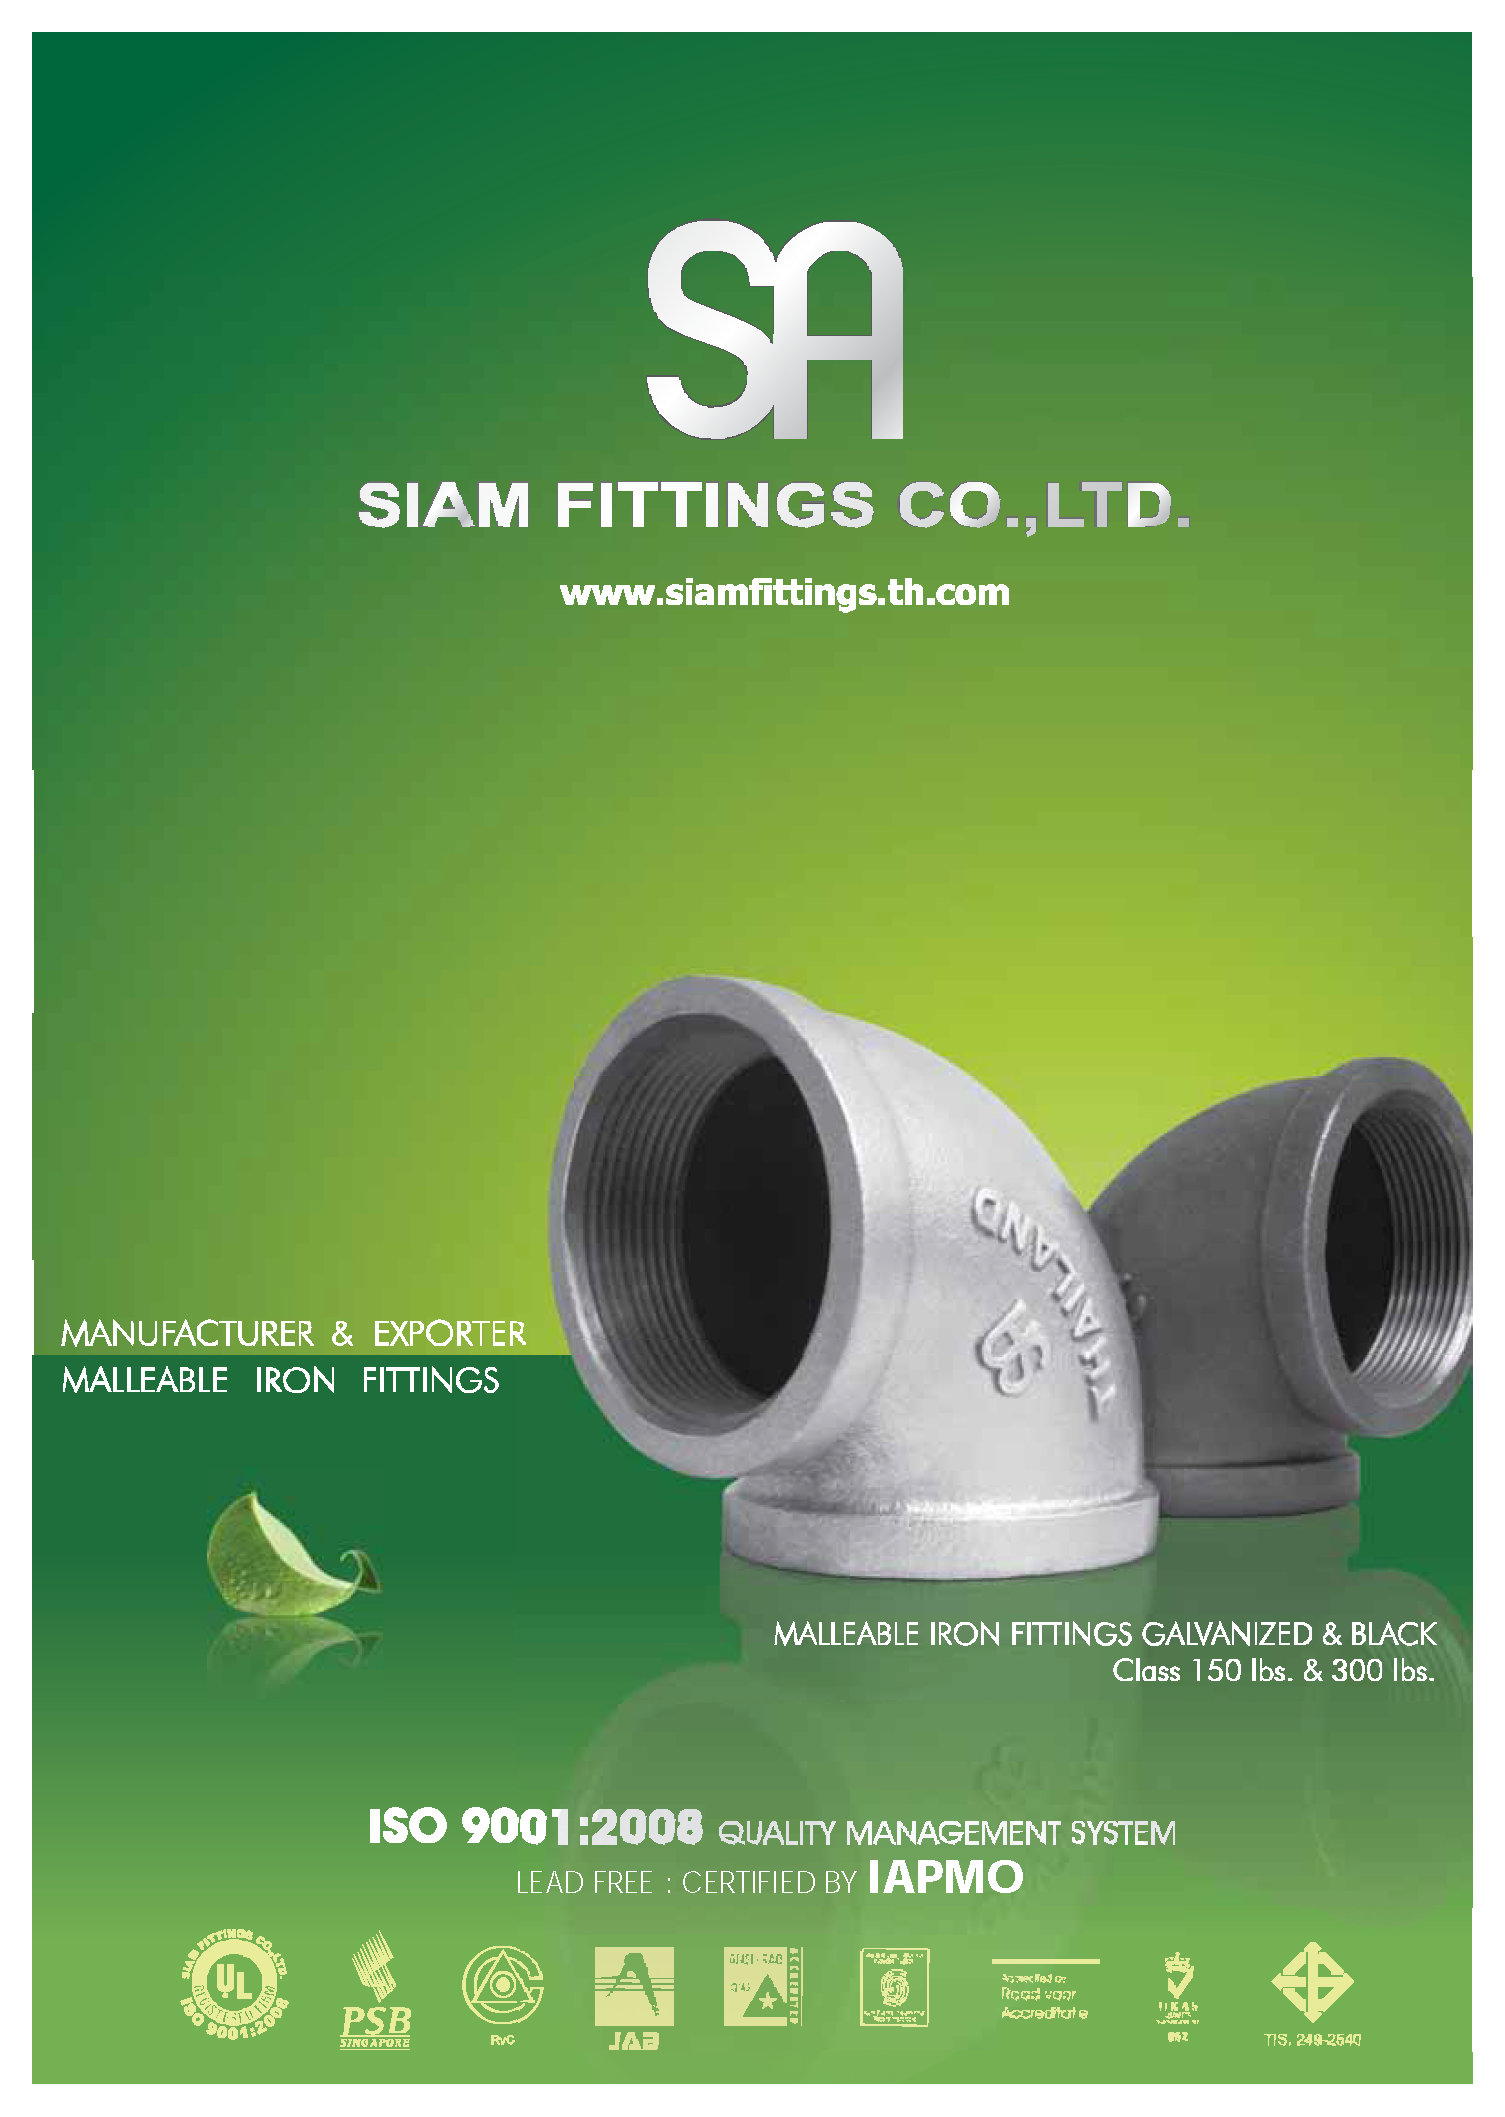 Phụ kiện ren SIAM Fittings sản xuất tại Thái Lan